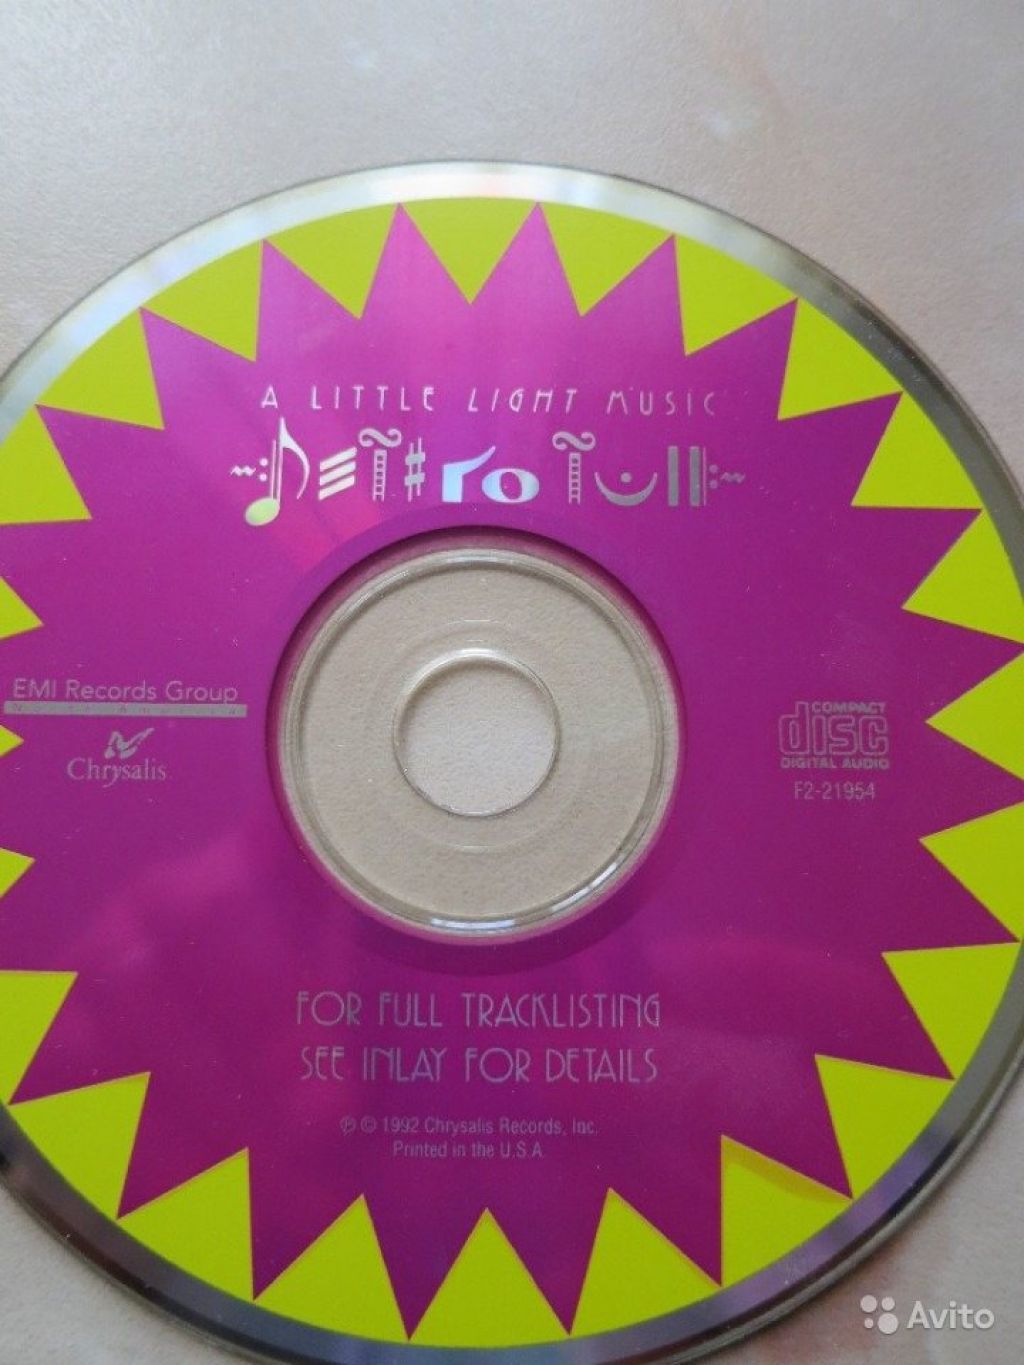 Аудио CD Jethro Tull, King Crimson, Roxy Music в Москве. Фото 1